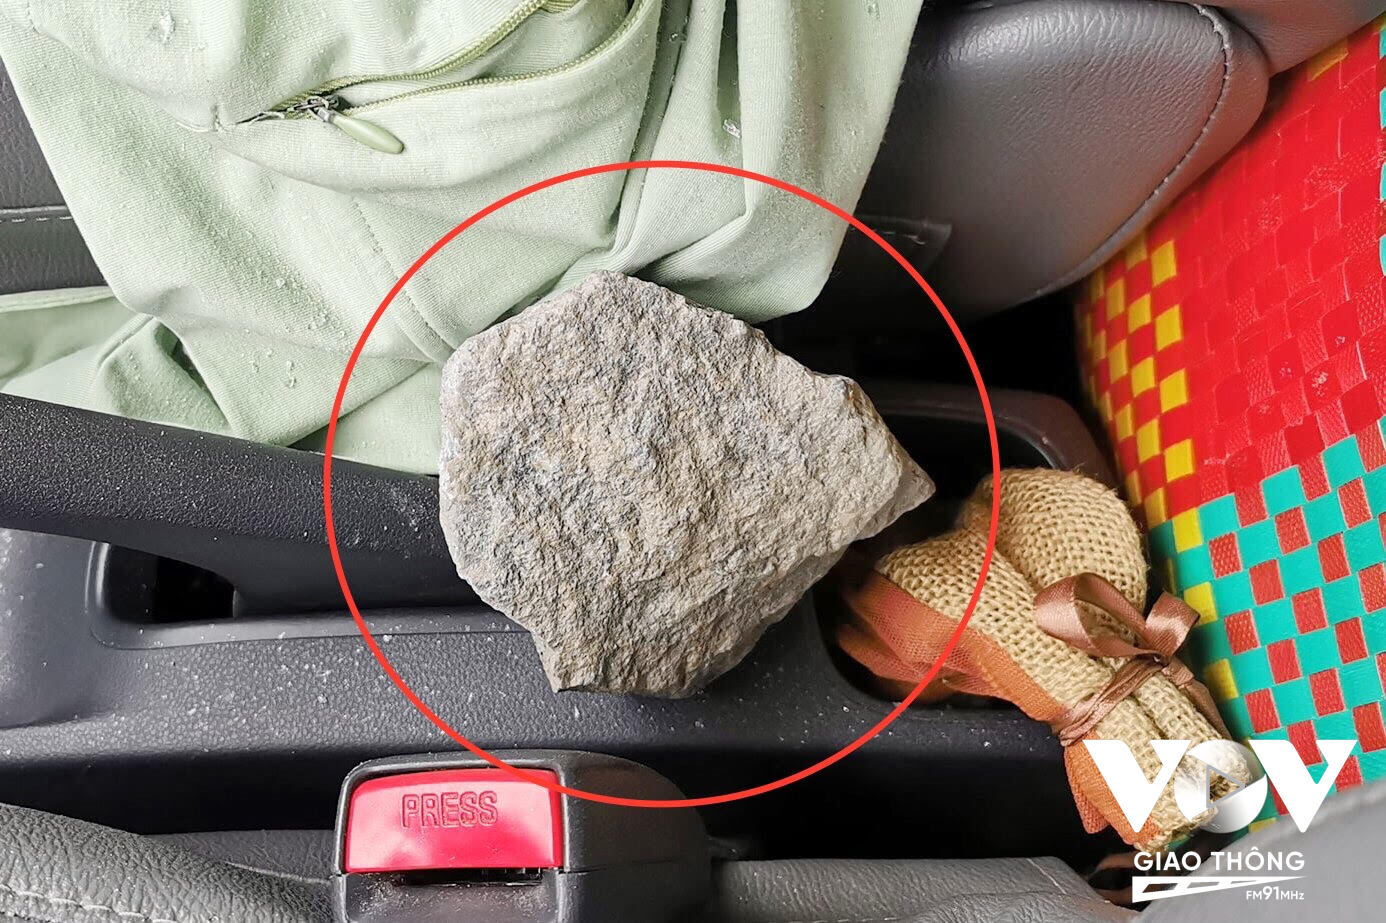 Vụ việc khiến 1 phụ nữ ngồi trong xe ô tô bị thương khi bị cục đá rơi trúng.